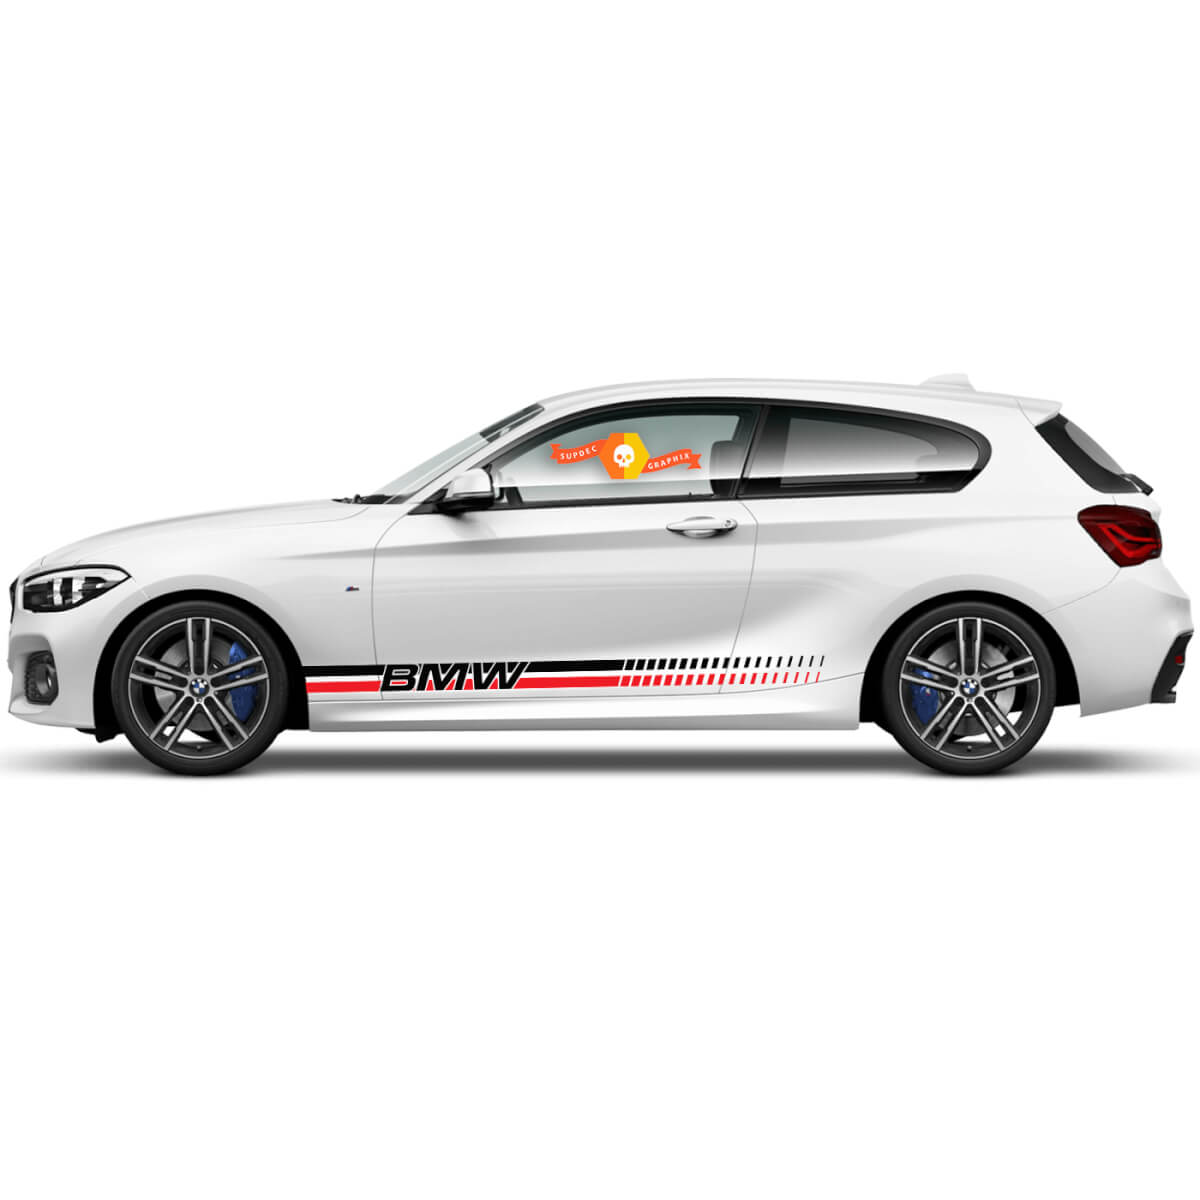 2x Stickers Vinyle Autocollants Graphiques Côté BMW Série 1 2015 Bas de caisse Style Racing Nouveau
